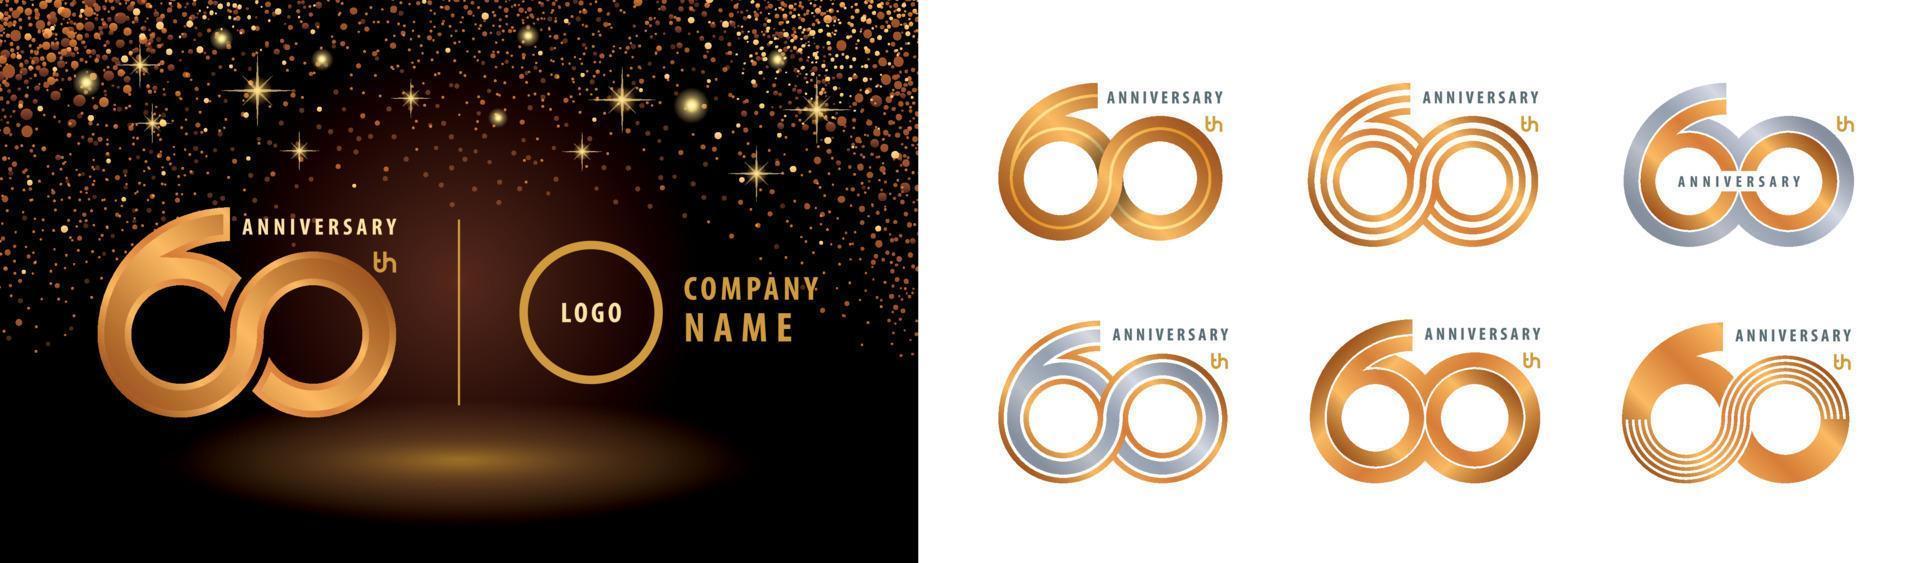 conjunto de diseño de logotipo del 60 aniversario. celebración del aniversario de sesenta años. vector de logotipo de bucle infinito.